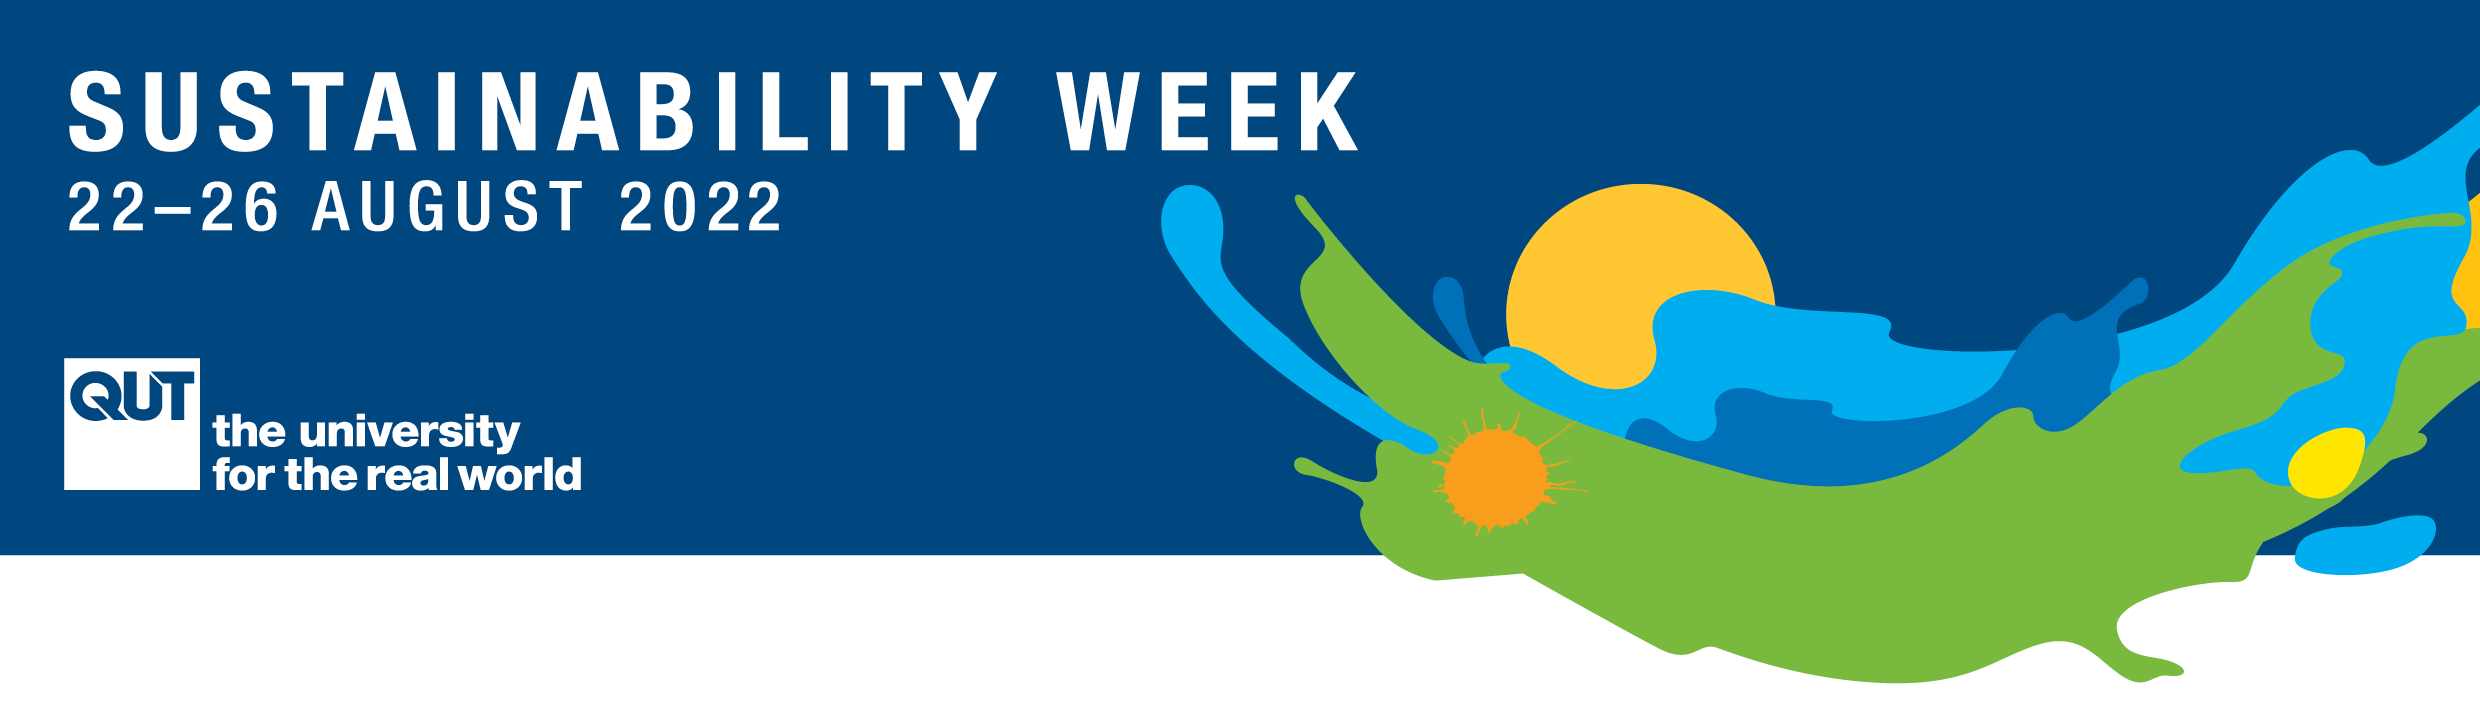 Sustainability Week logo